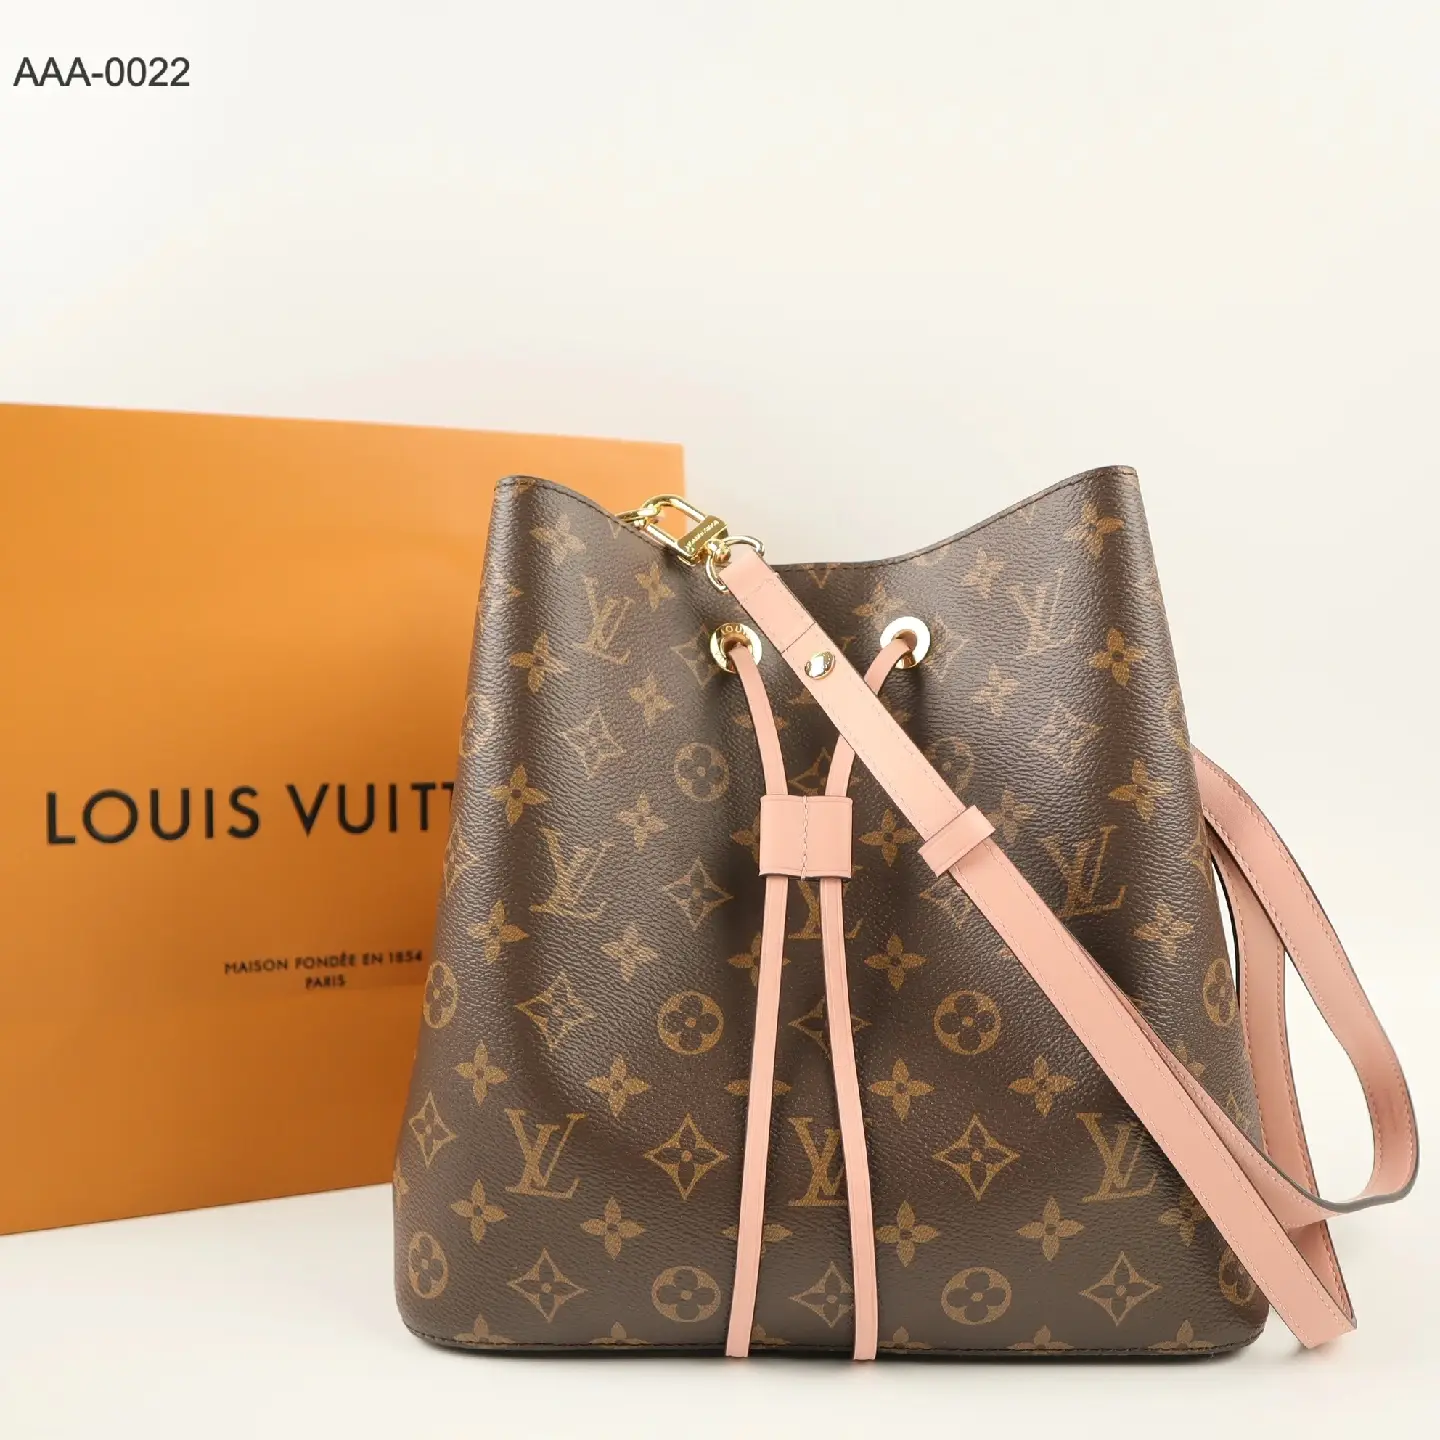 Sanara LS GetFashion - We delen nog een foto! ♡ Louis Vuitton sleutelhanger  ▫Komt in LV doos en LV stofzakje ▫Enkel op aanvraag te bestellen ▫Levertijd  2-4 weken ▫Kleuren: rood, bruin en zwart